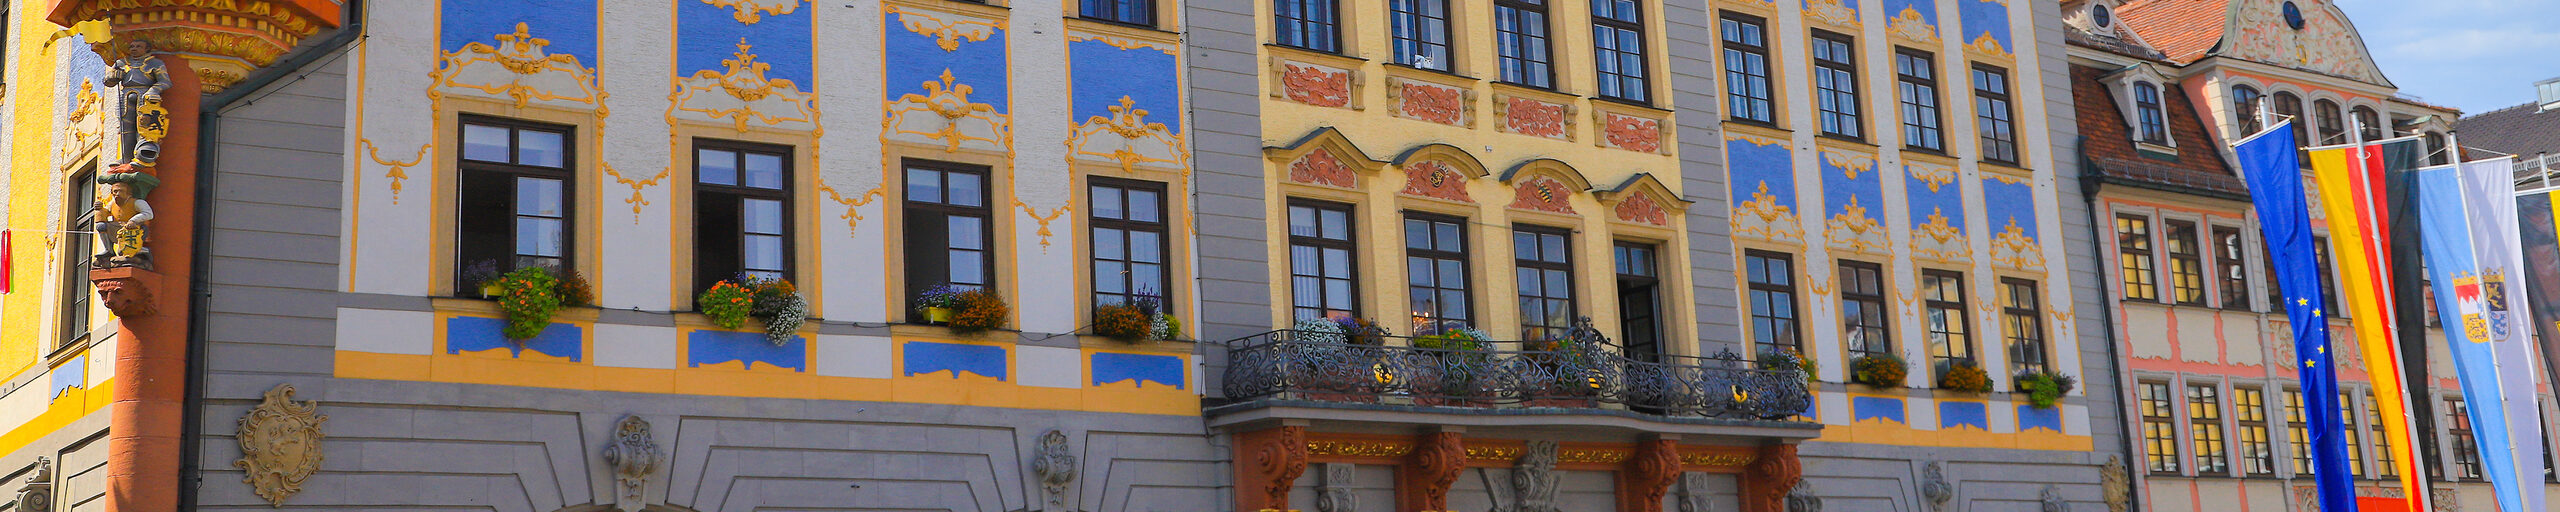 Fassade des Rathauses an einem sonnigen Tag